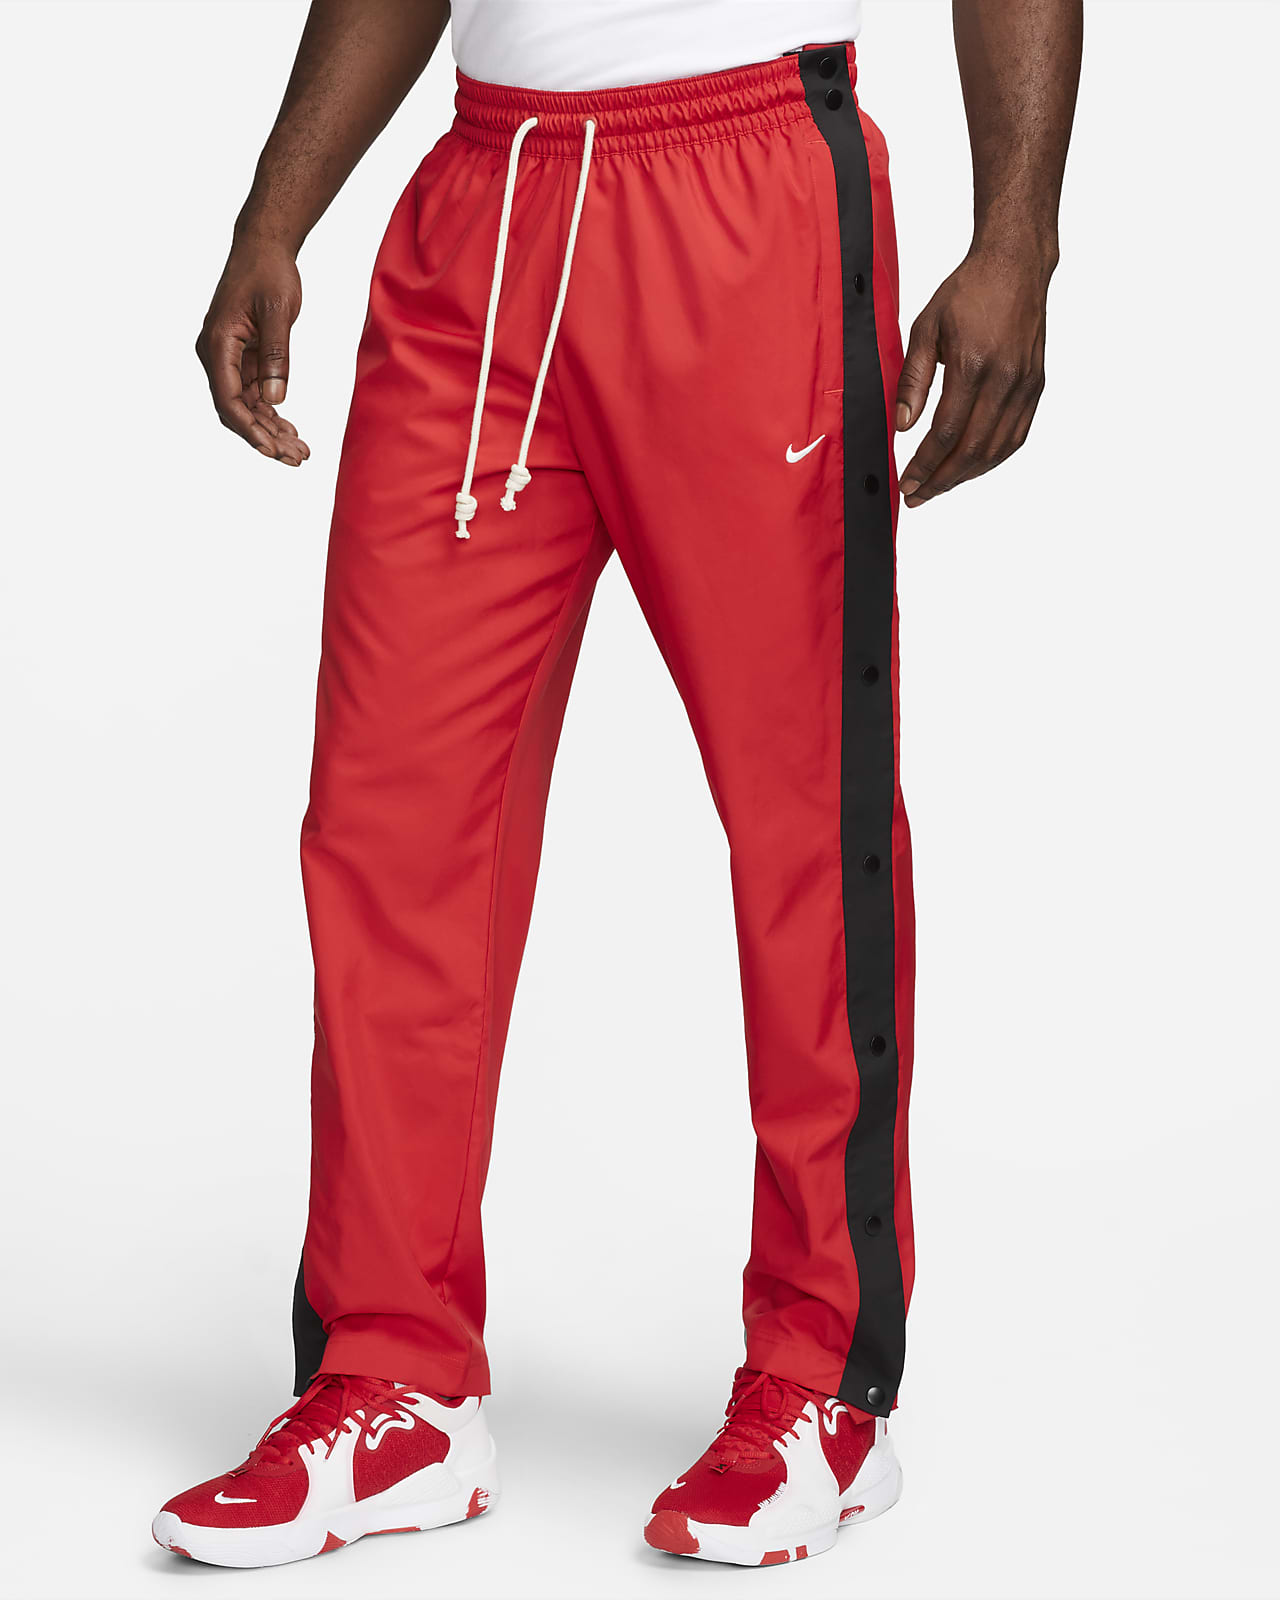 Kwijtschelding getuige stof in de ogen gooien Nike DNA Men's Tearaway Basketball Pants. Nike.com